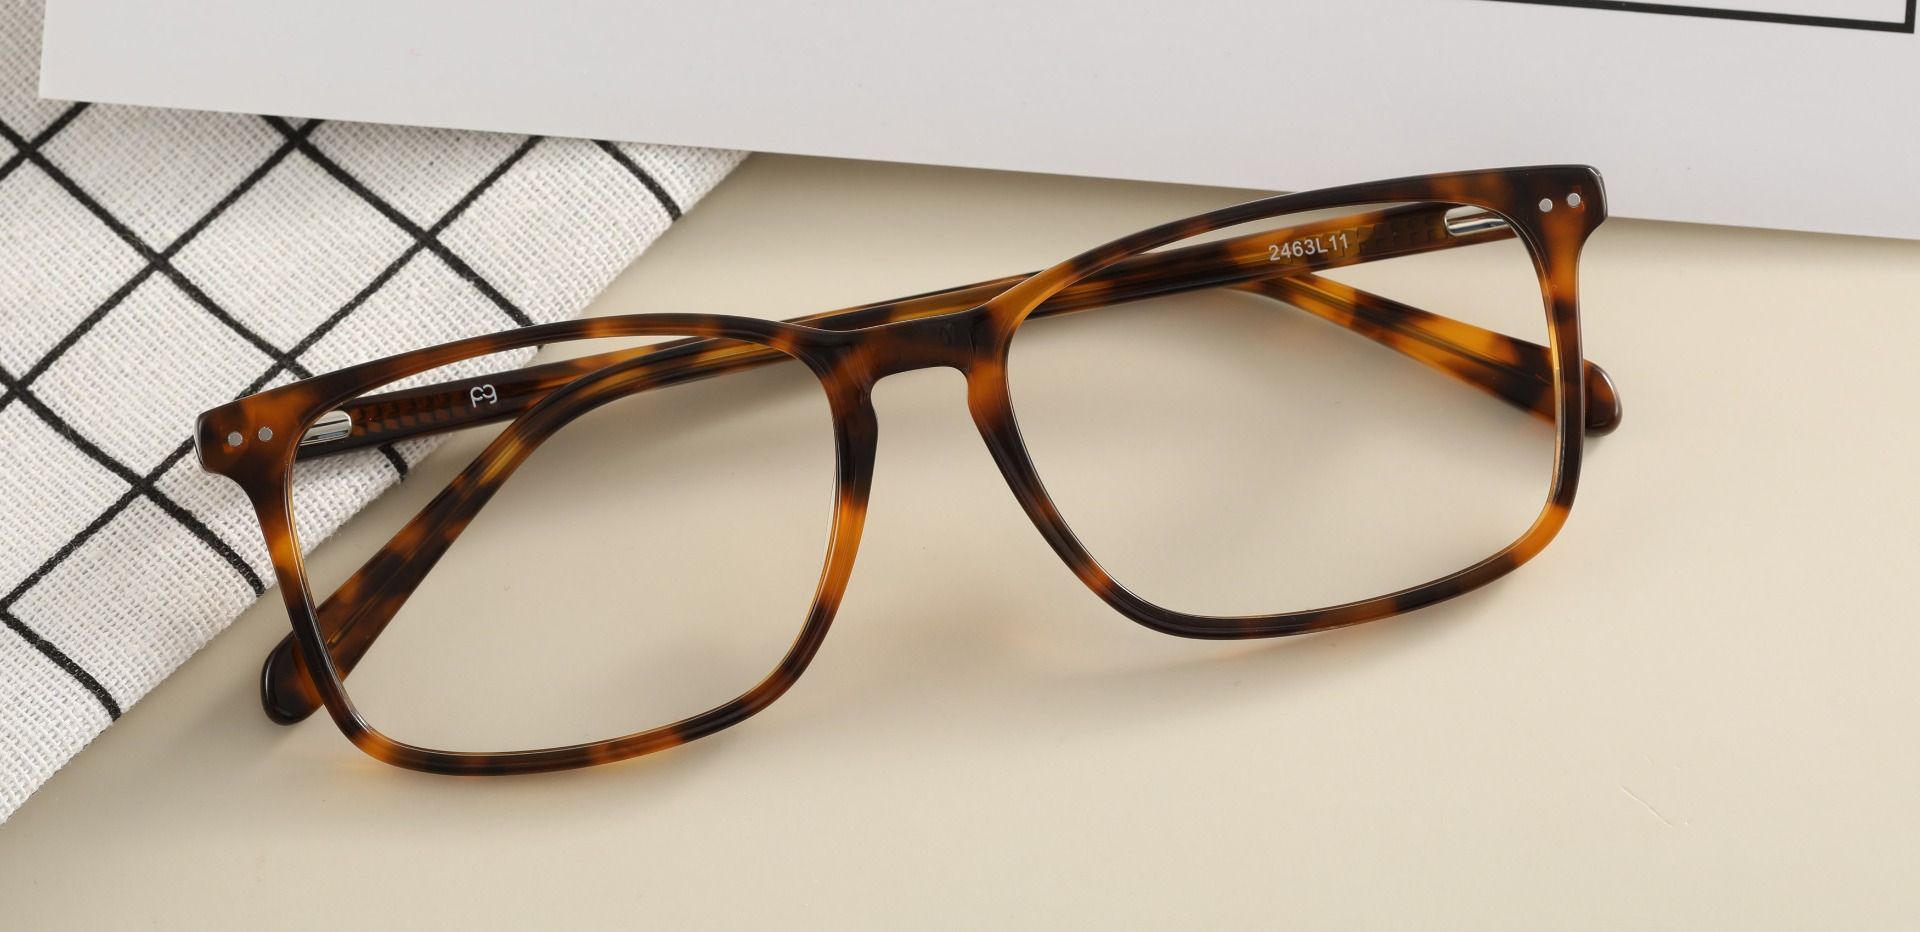 Finney Rectangle Progressive Glasses - Tortoise